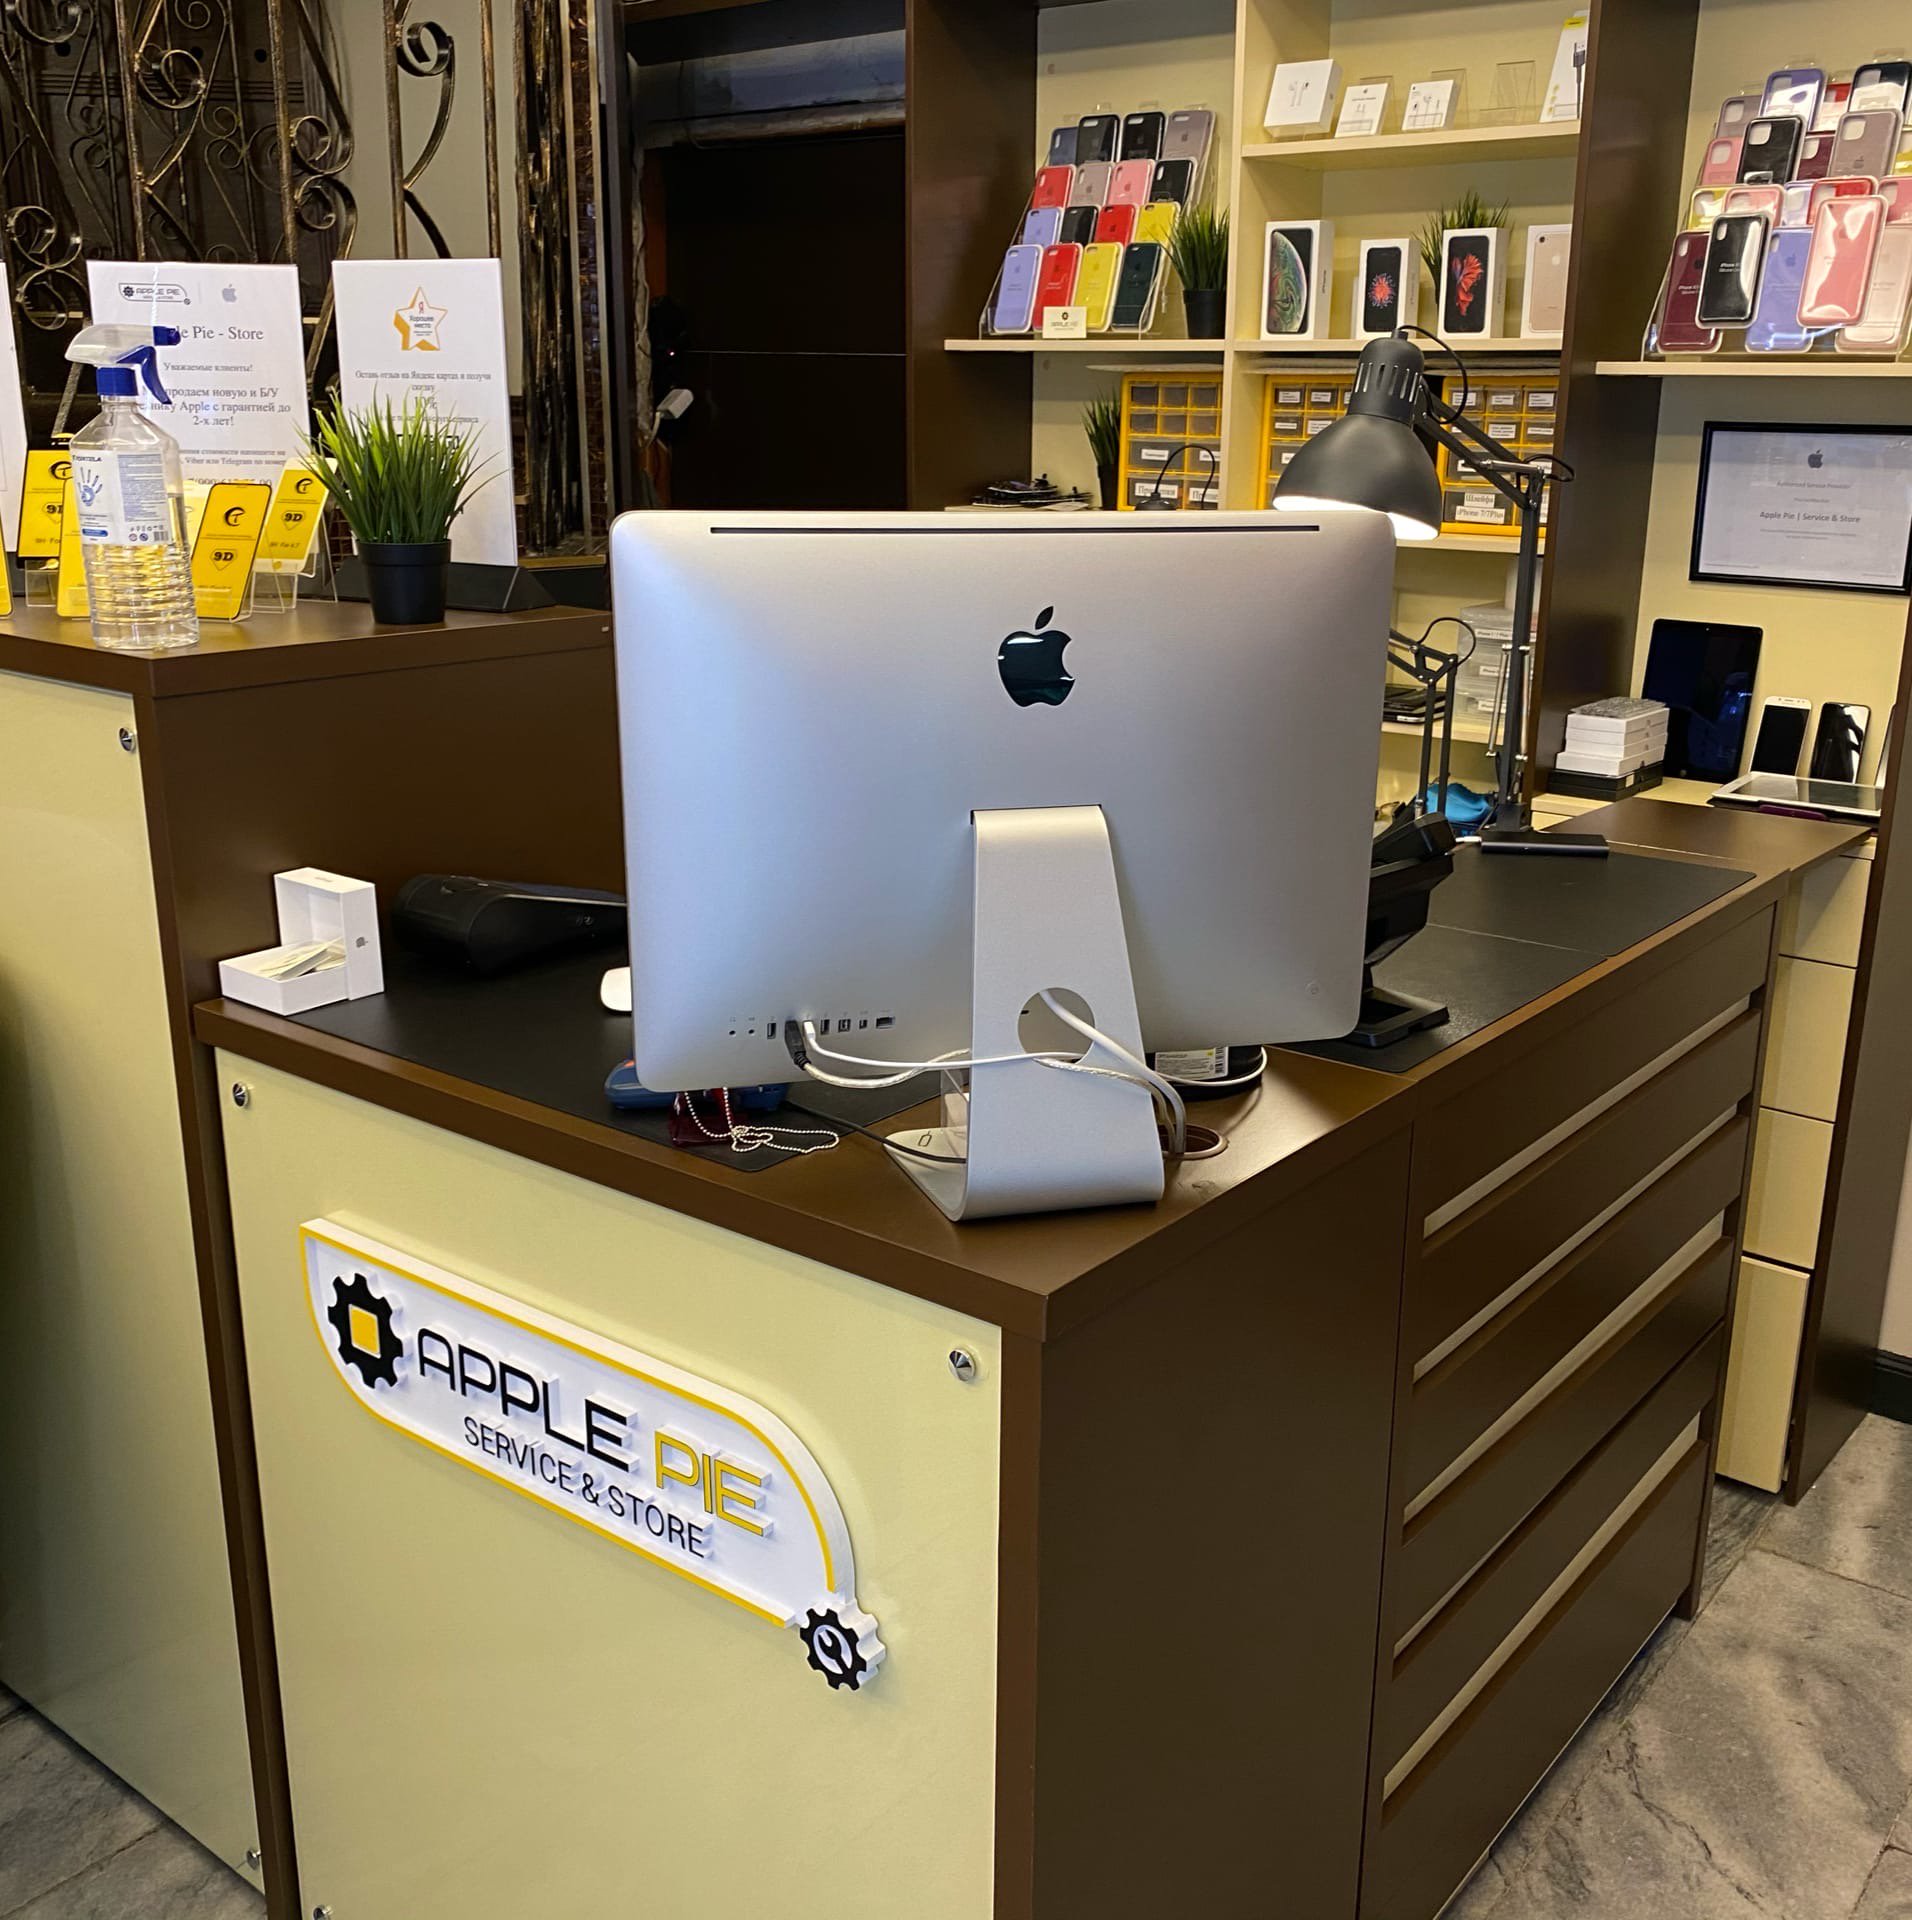 Apple Pie, сервис по ремонту смартфонов, планшетов и ноутбуков, улица Мясницкая, 18, 1 этаж, кофейня Правда кофе